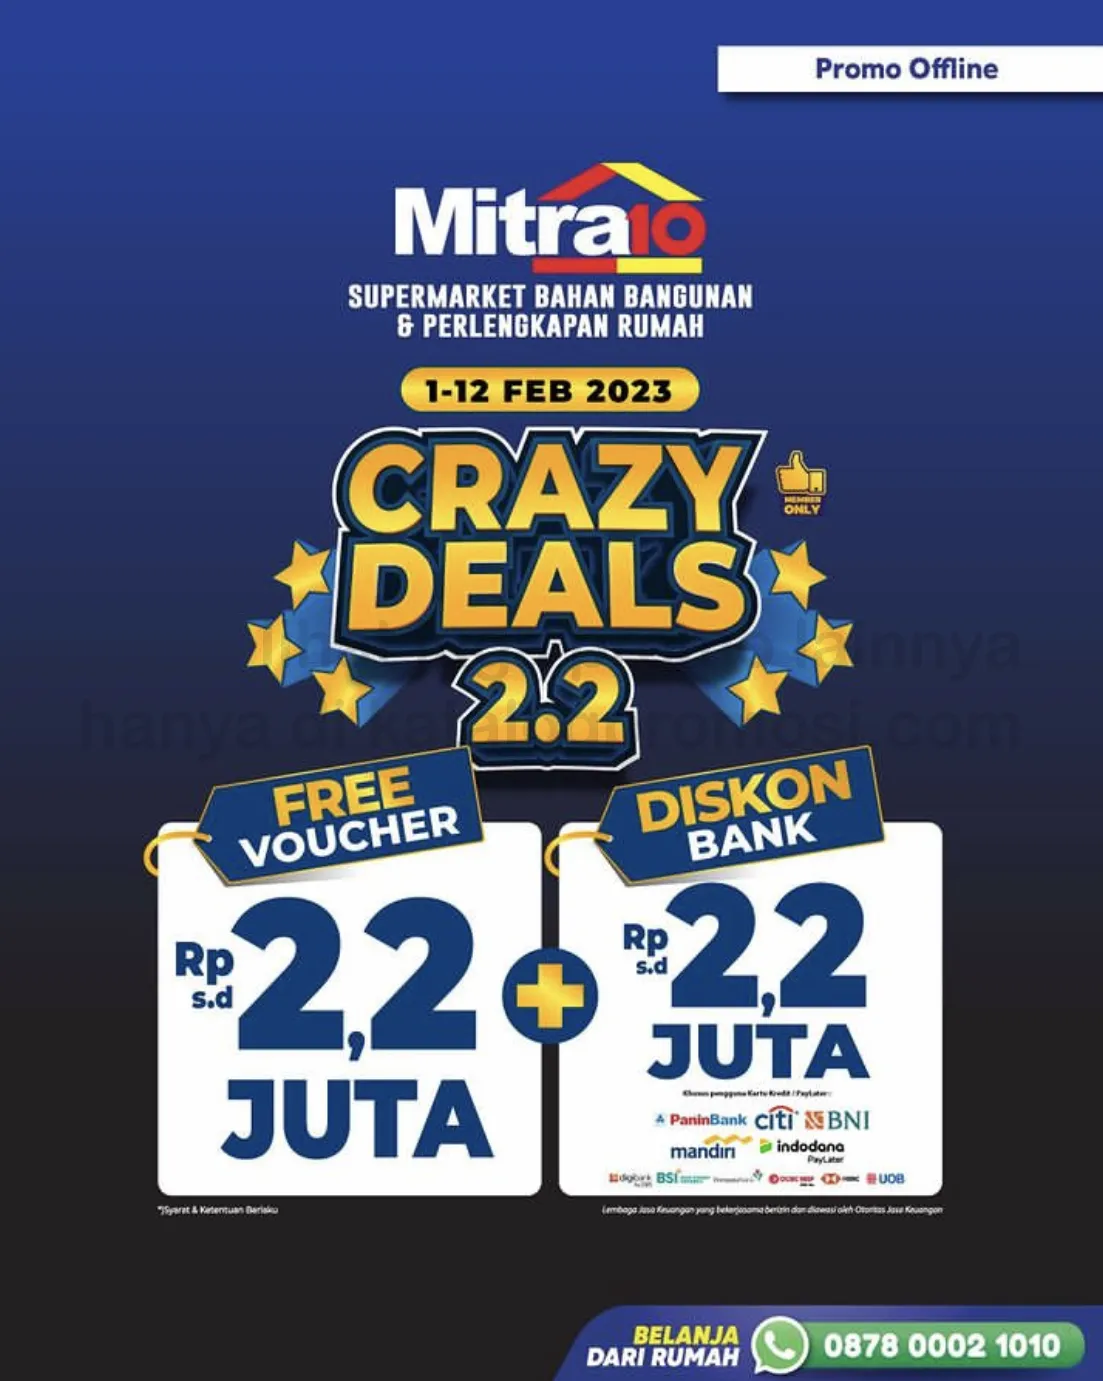 Promo MITRA10 2.2 CRAZY DEALS - Free Voucher sd 2,2 juta + Tambahan Diskon Kartu Kerdit Bank